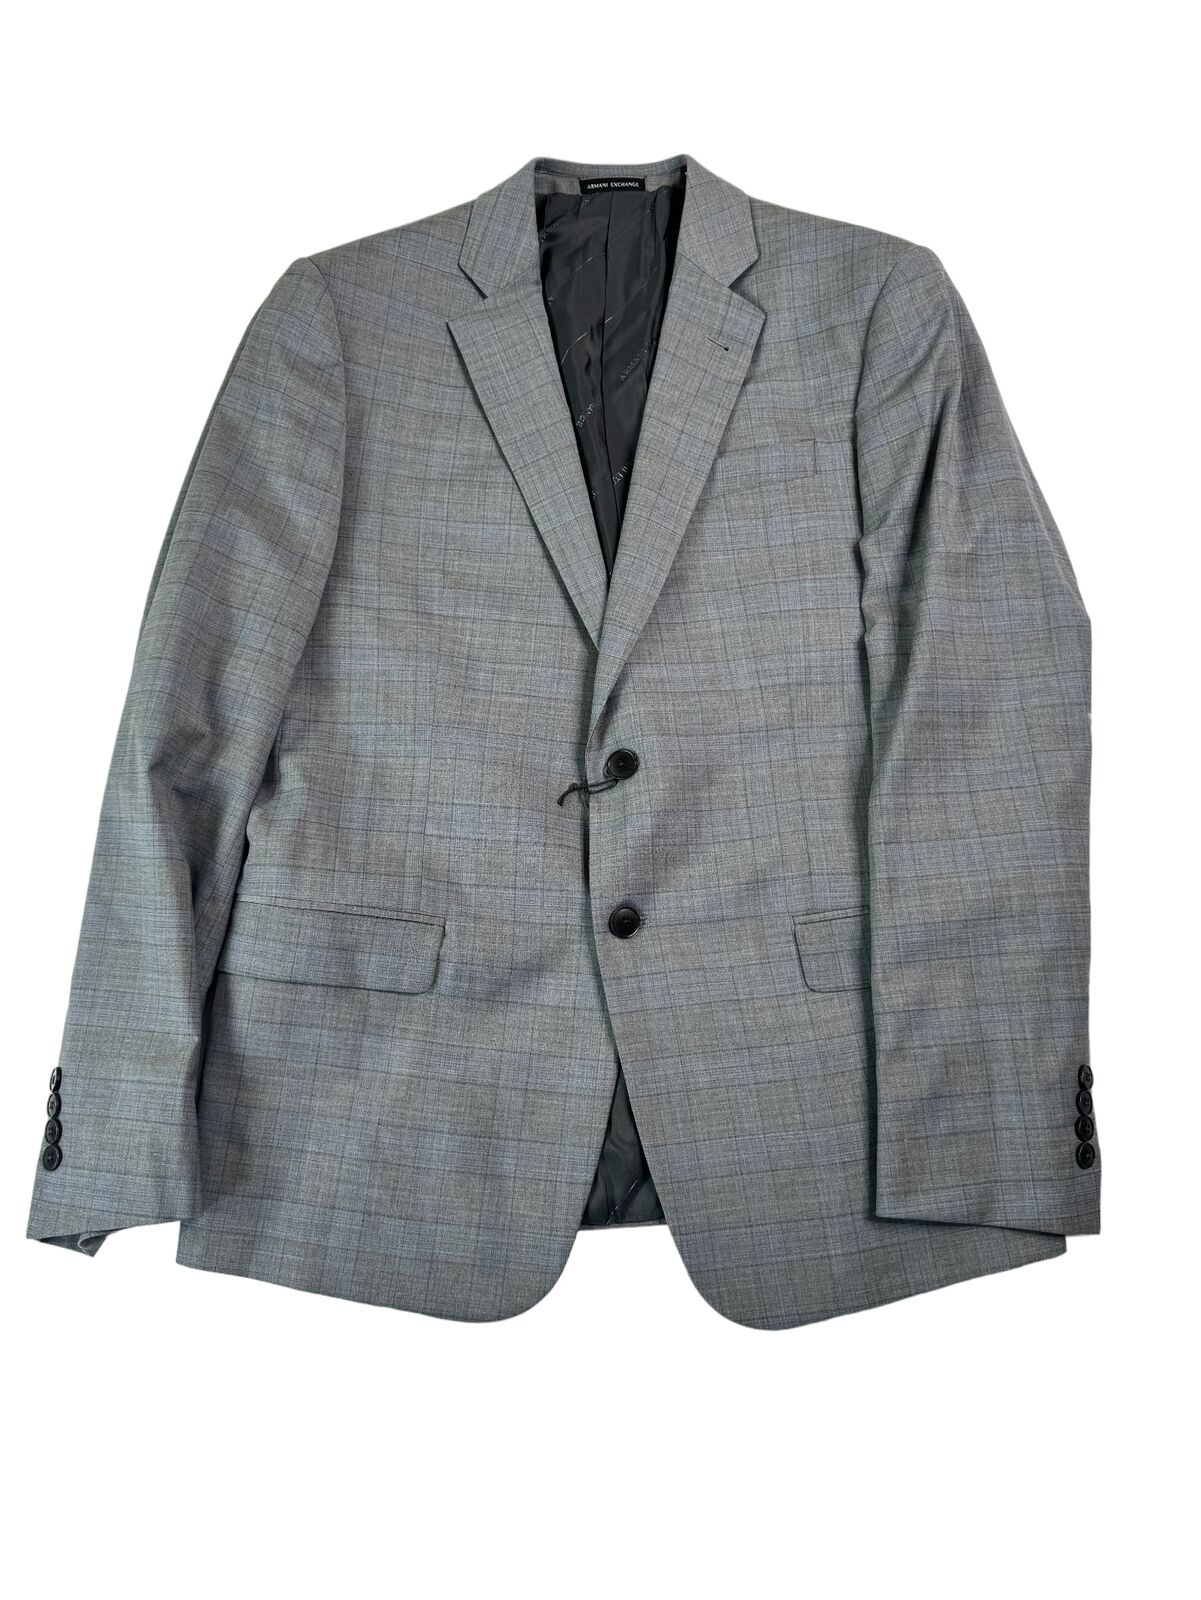 AX Armani Exchange Men\'s Slim-Fit Plaid Suit Jacket 38S Grey / Light Blue